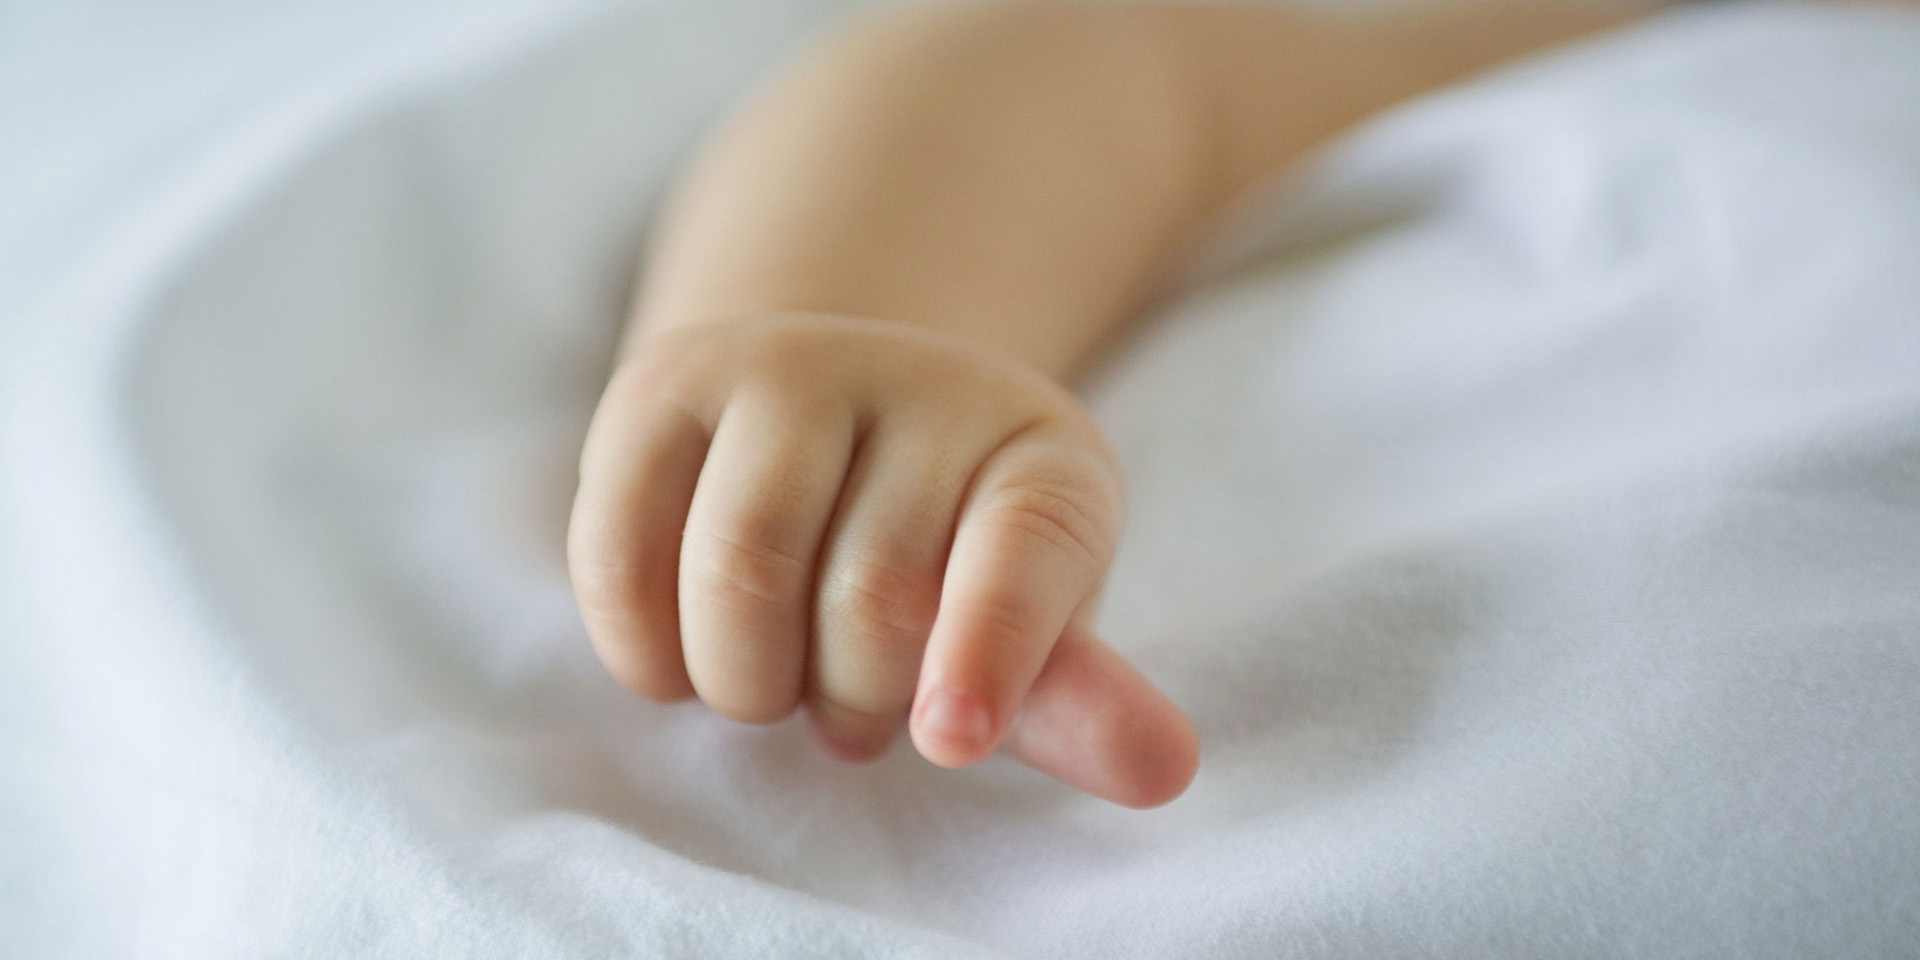 В Могилеве на козырьке дома нашли новорожденную девочку. Возбуждено уголовное дело